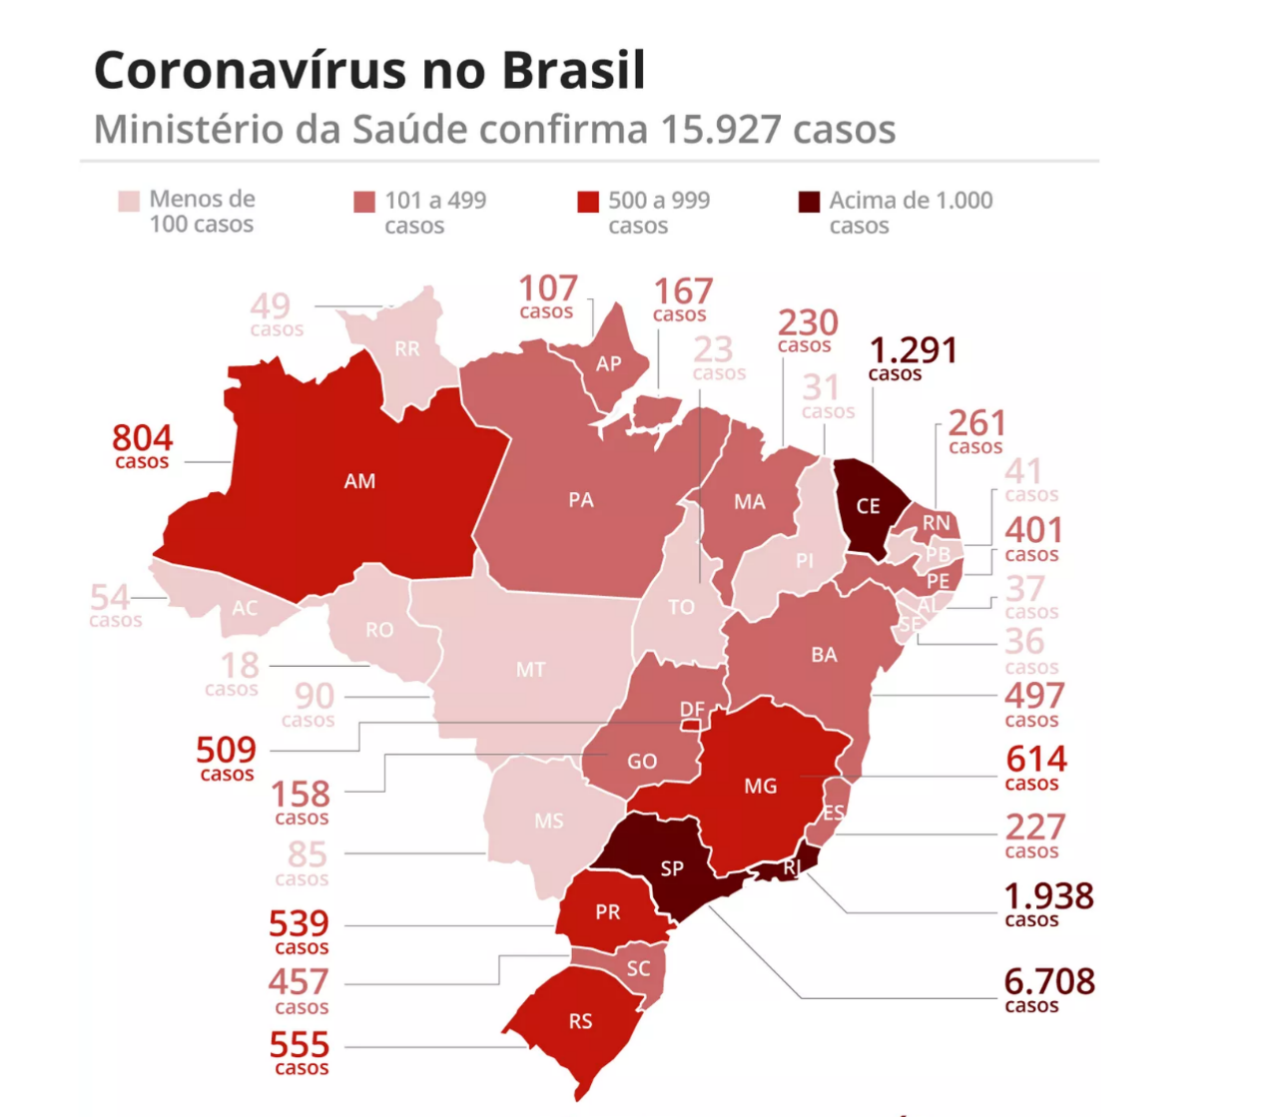 巴西新冠肺炎确诊病例达15927例 各地加紧建方舱医院